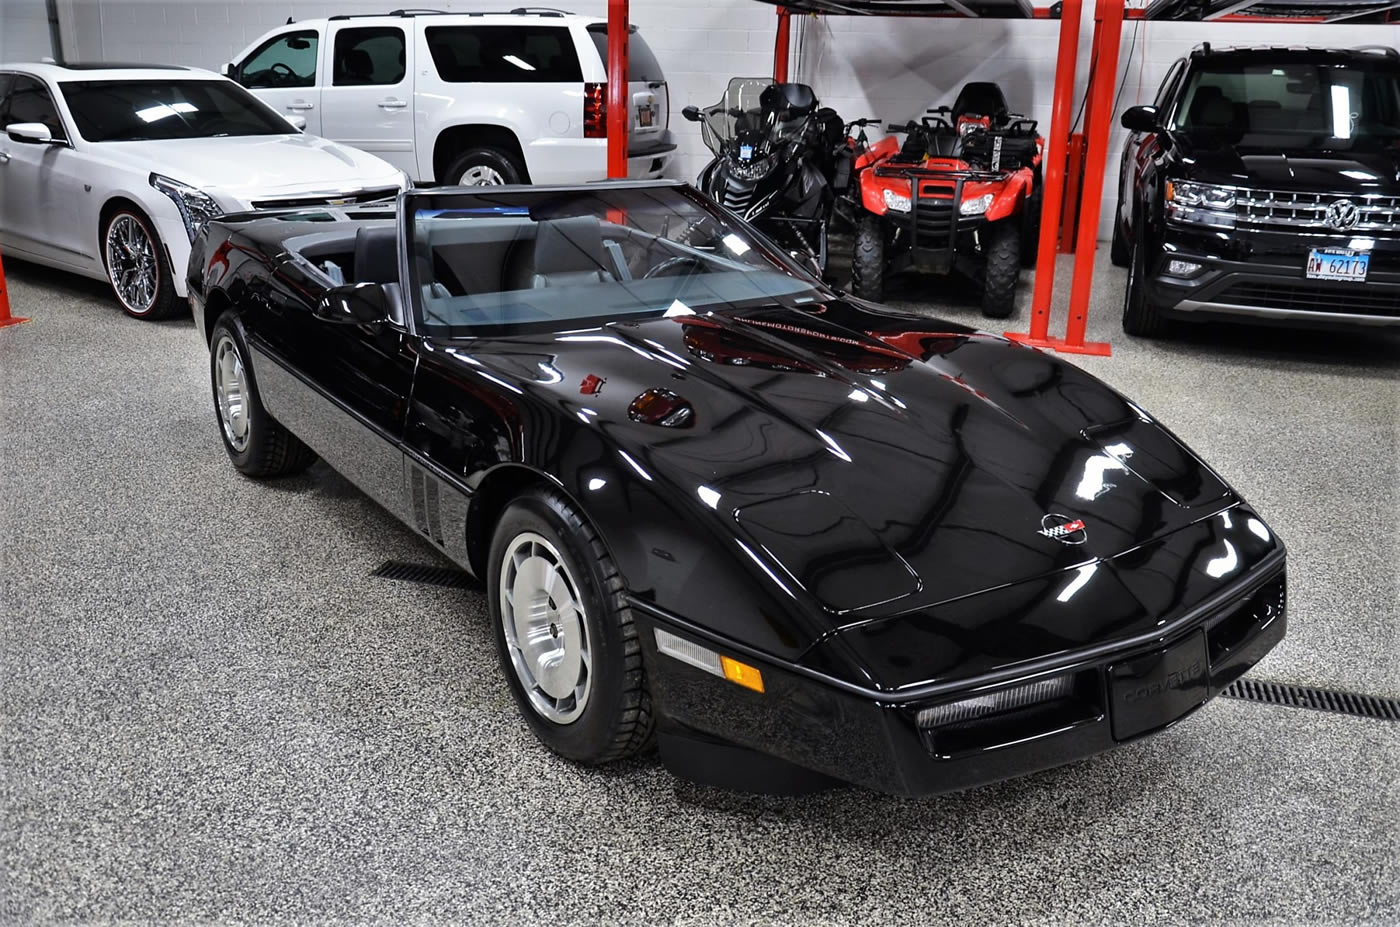 1986 Corvette Convertible in Black